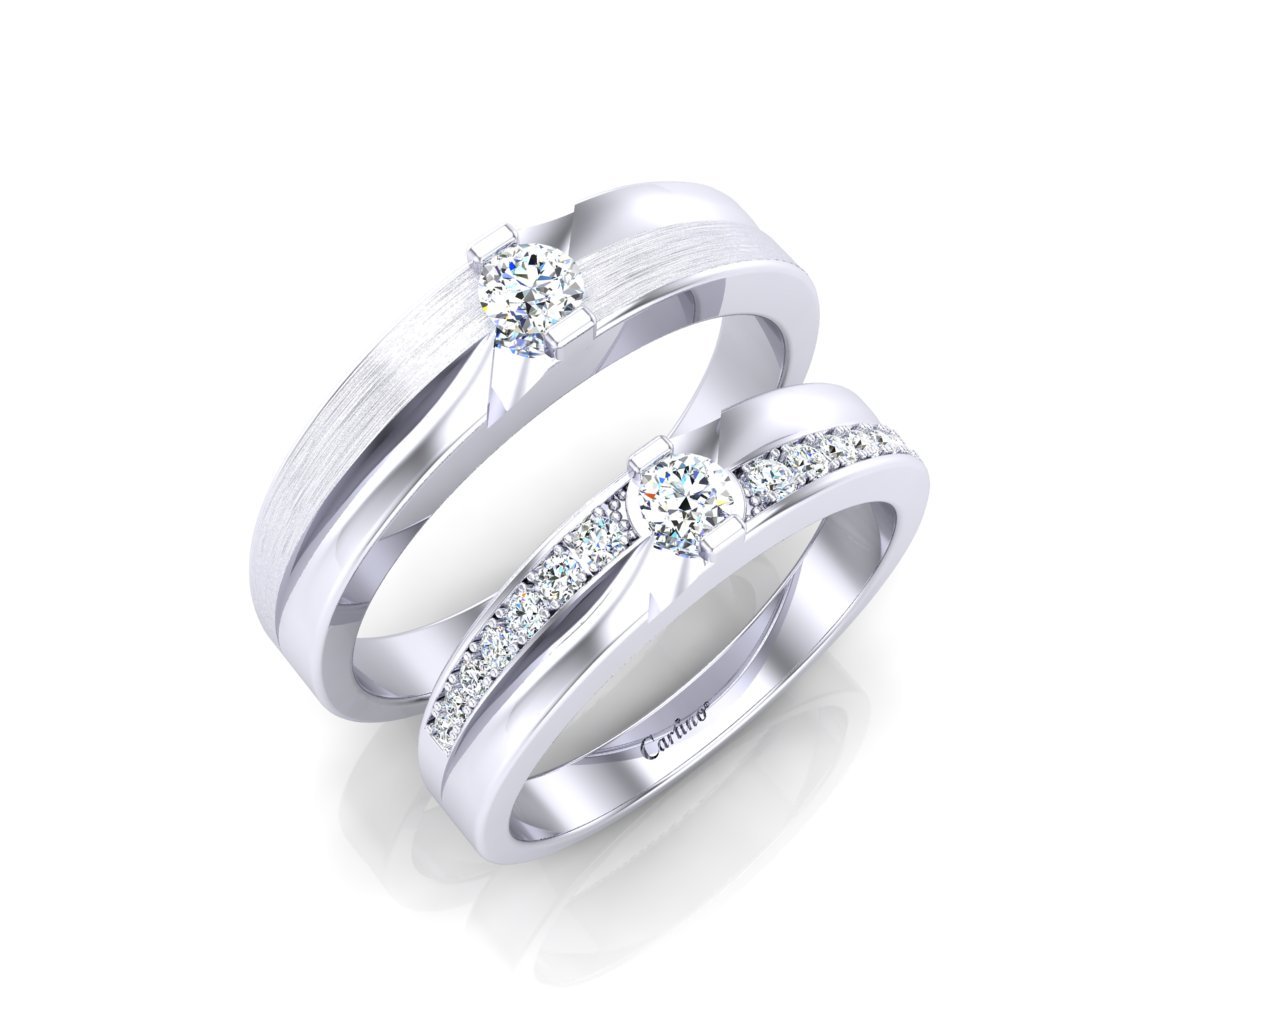 Top 18 mẫu nhẫn cưới PNJ đẹp chỉ từ 3 triệu đồng